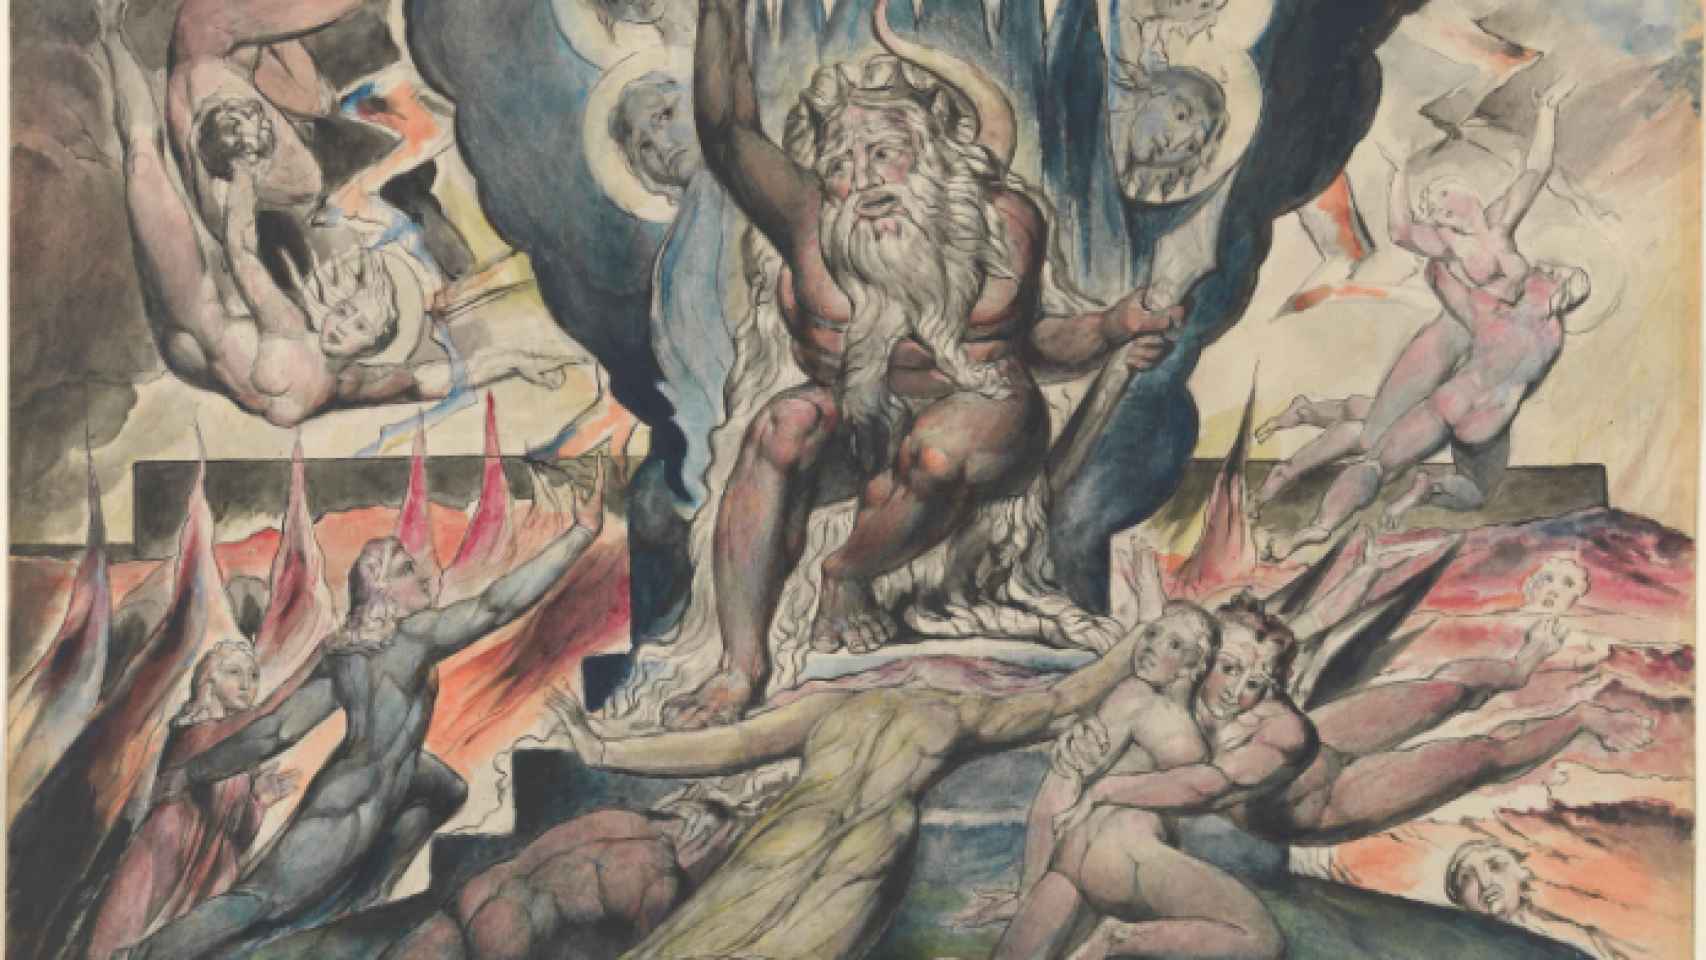 A Divina Comédia - Inferno: Anselm Feuerbach